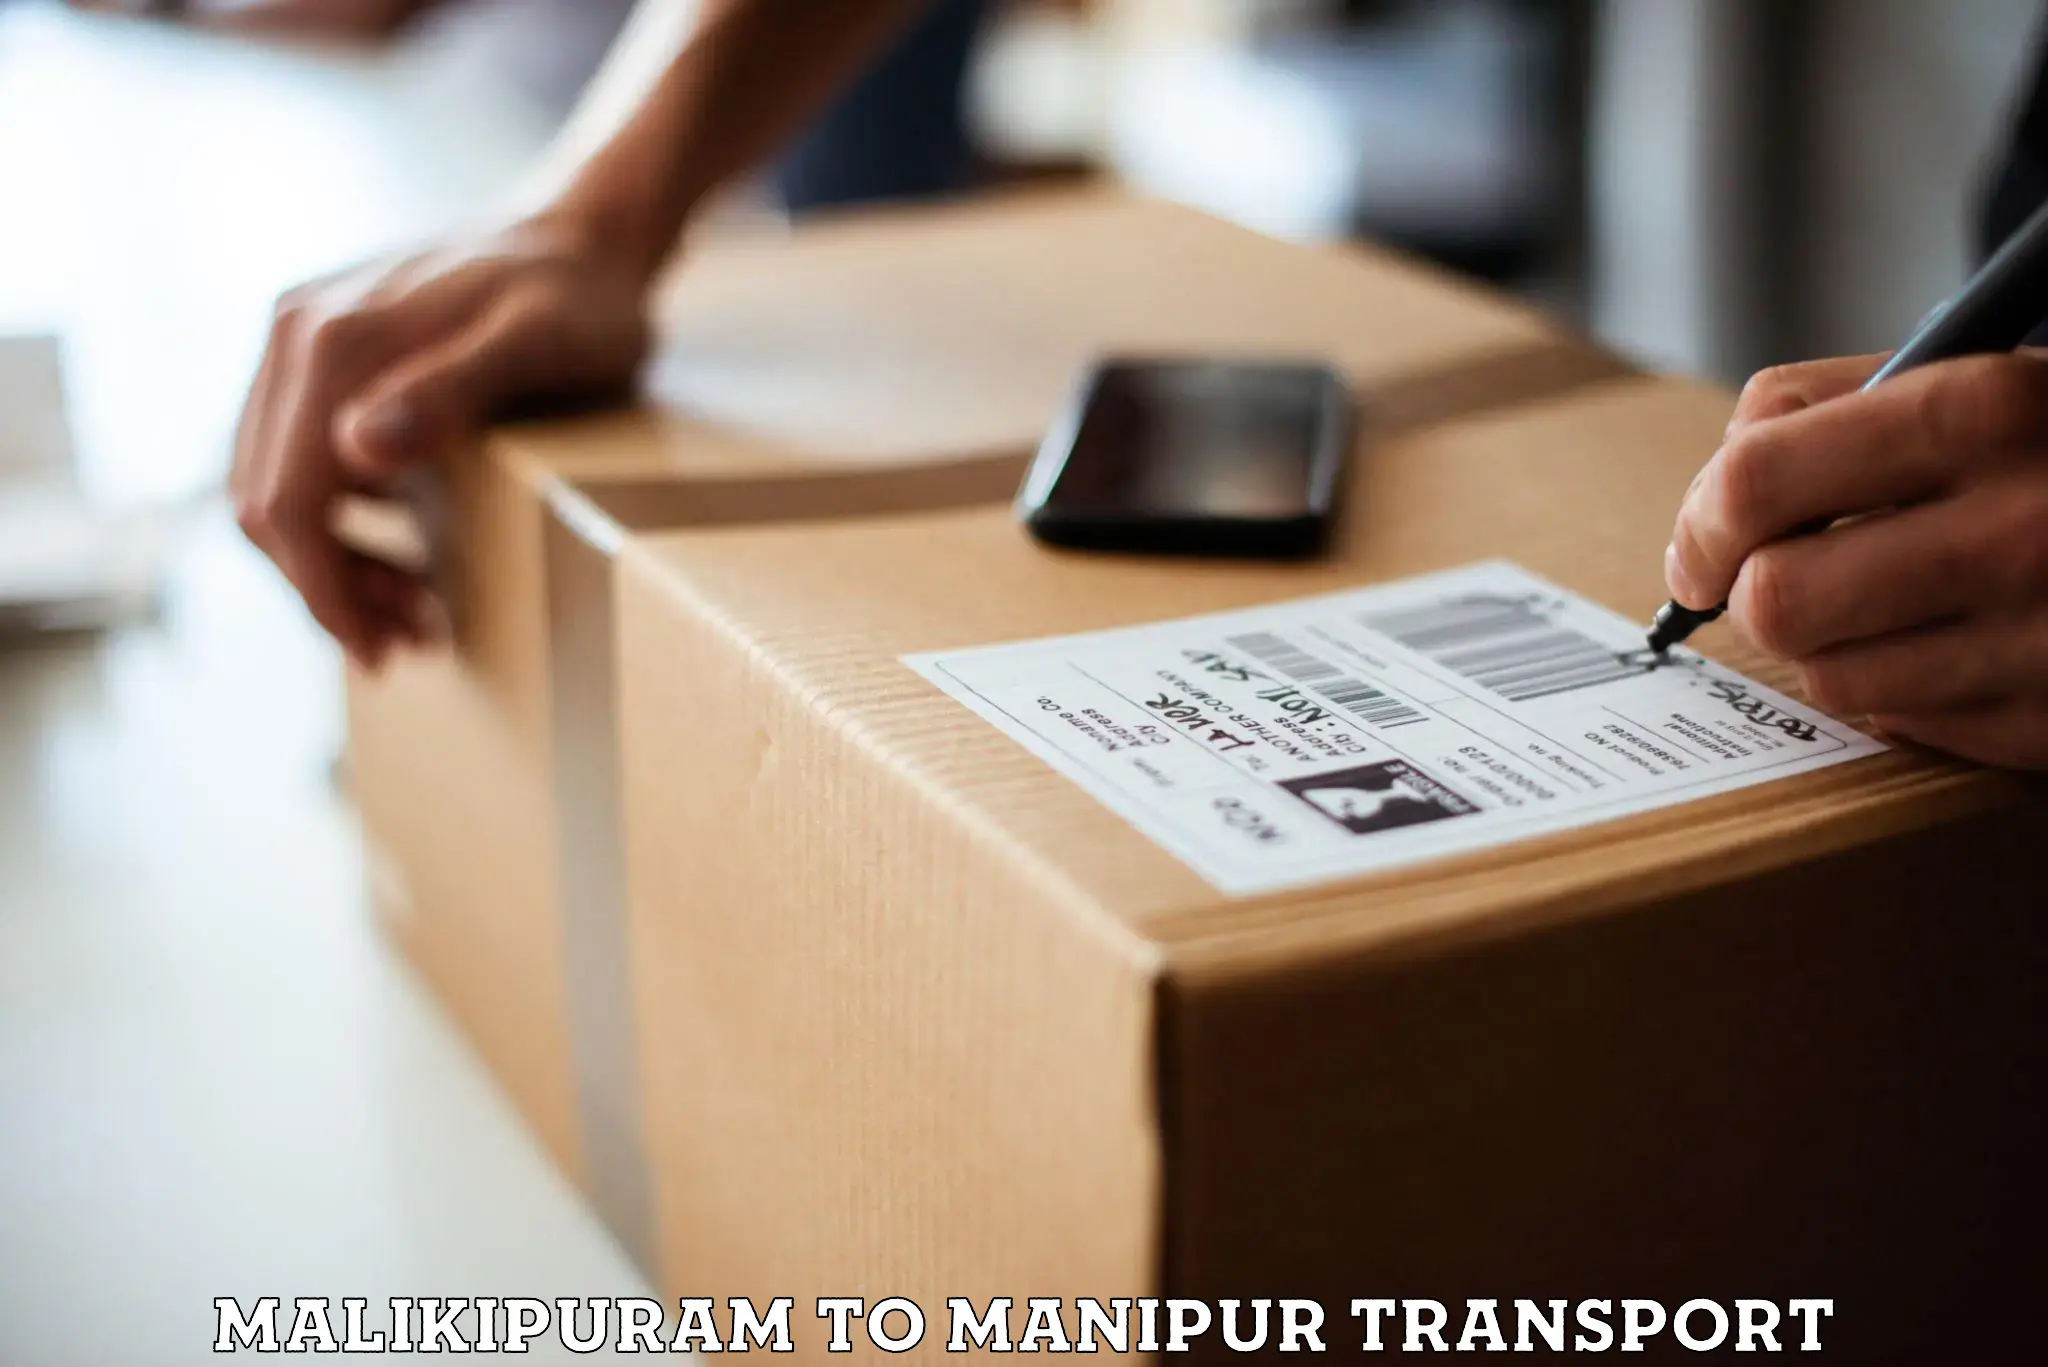 Lorry transport service Malikipuram to Kanti